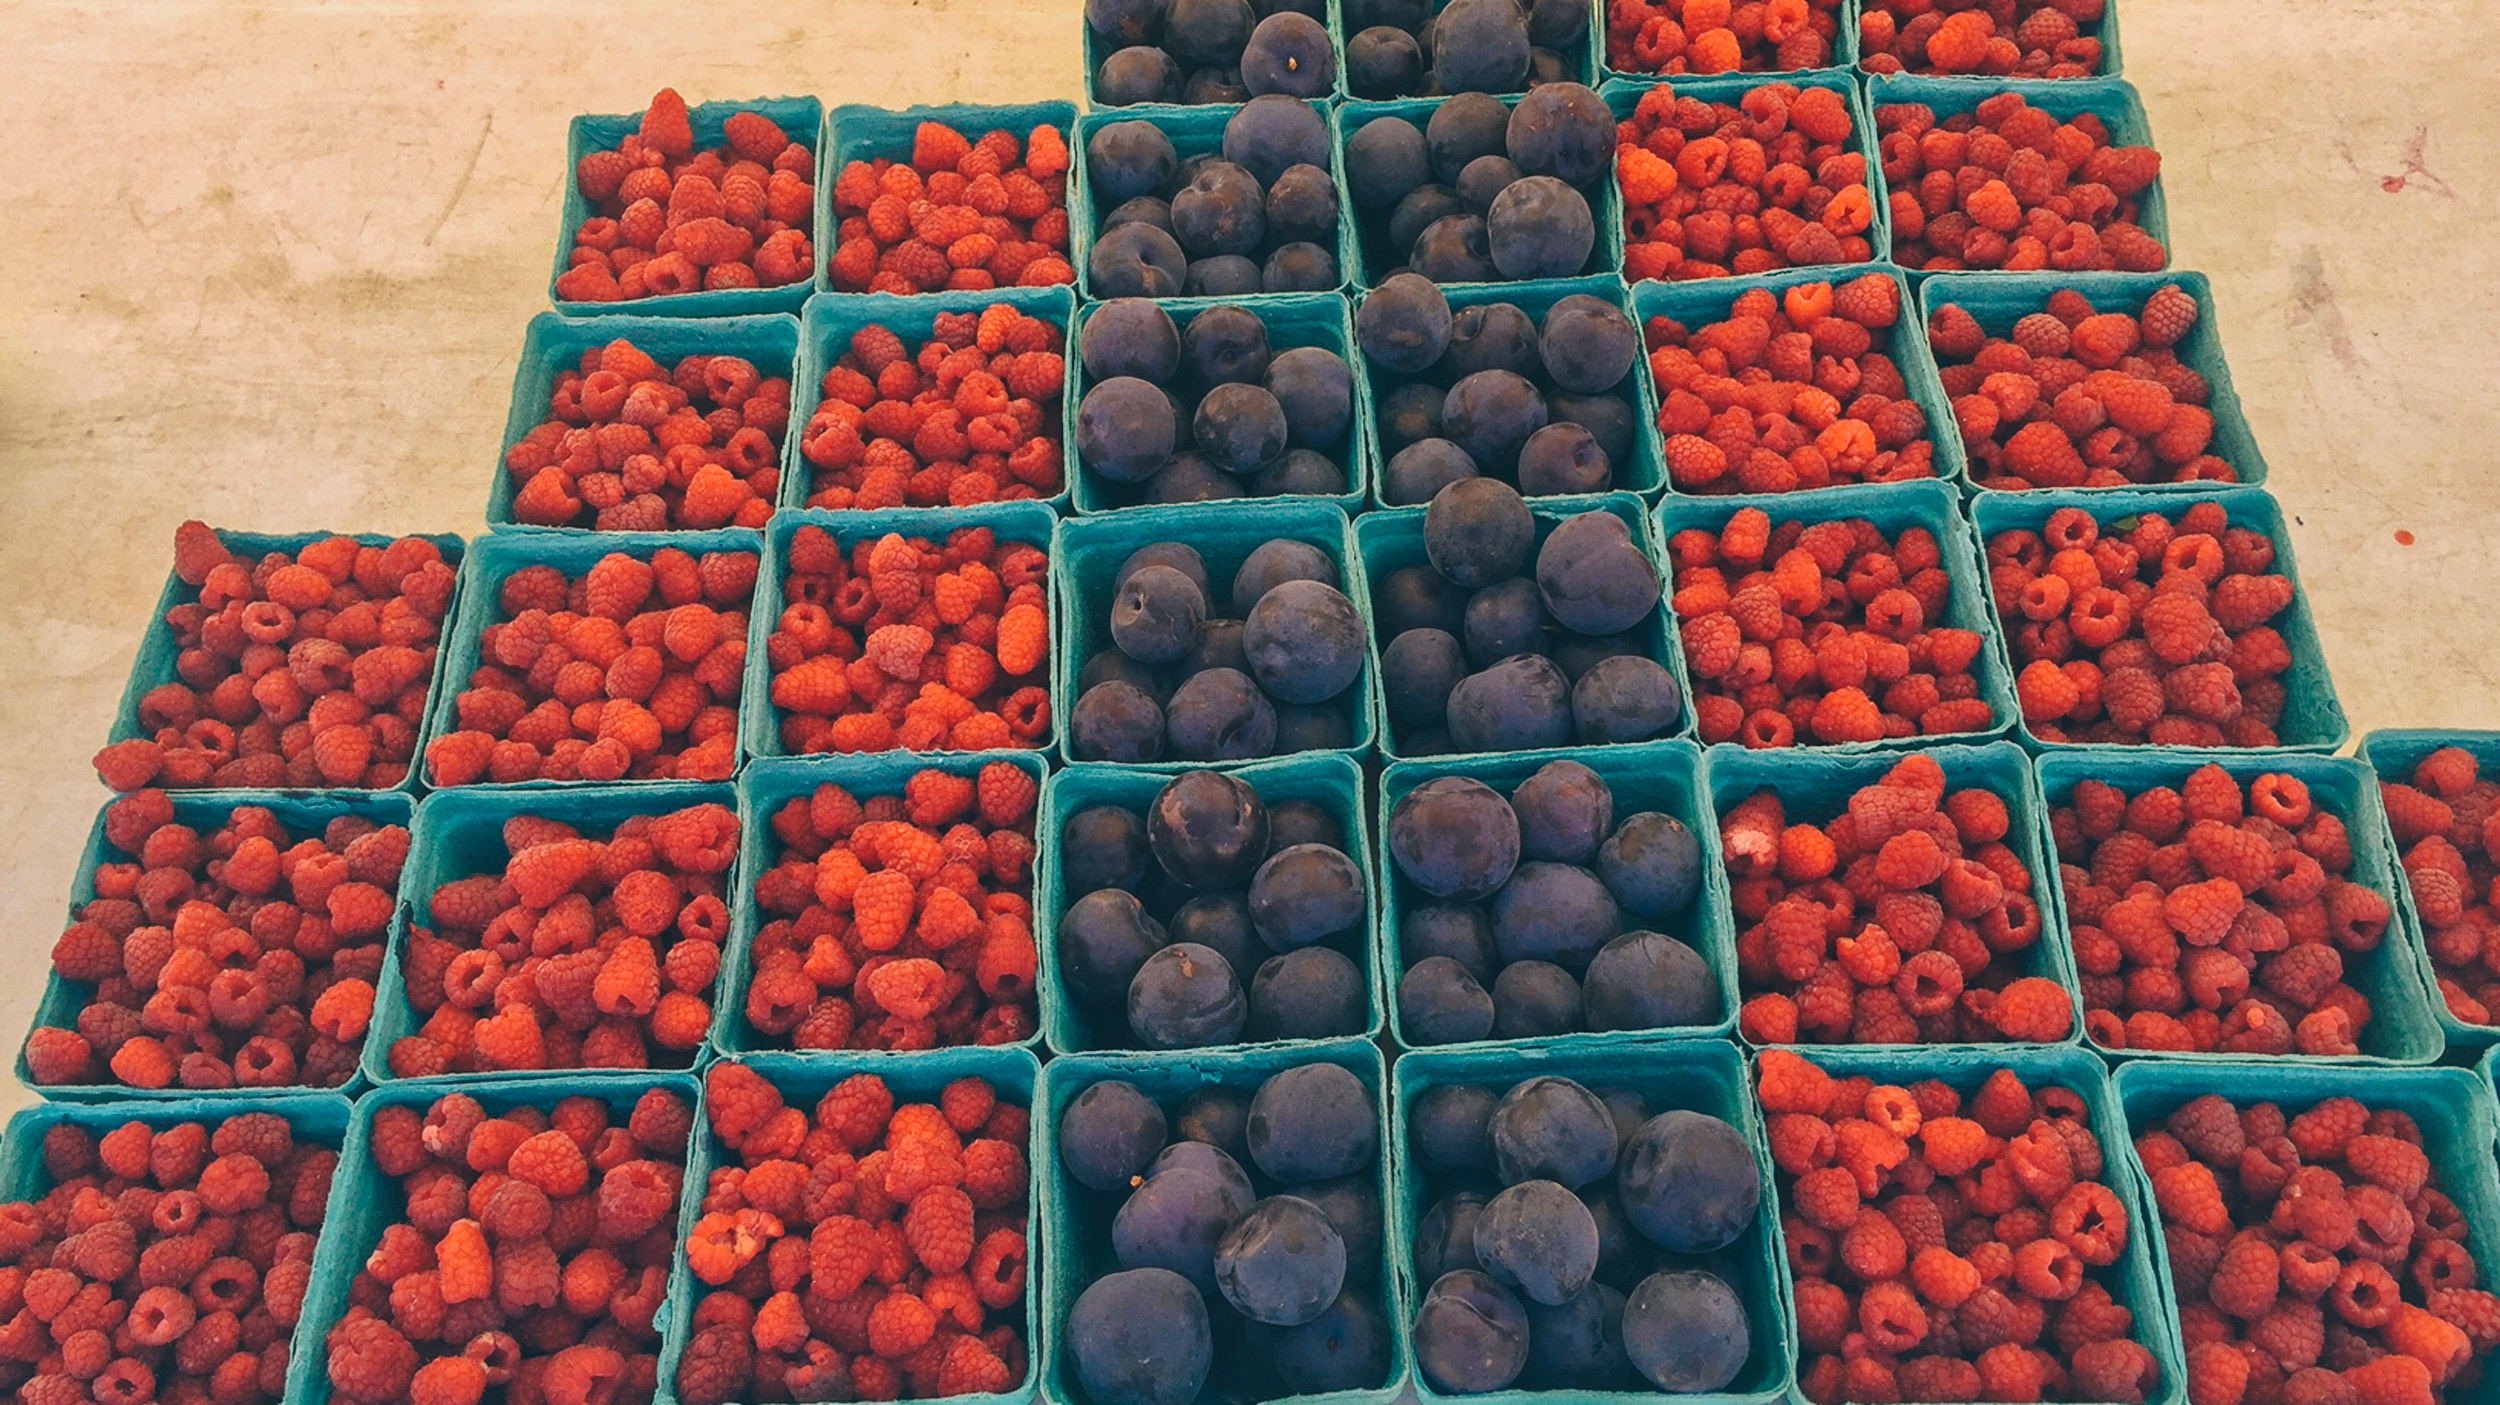 evanston farmers market berries.jpg